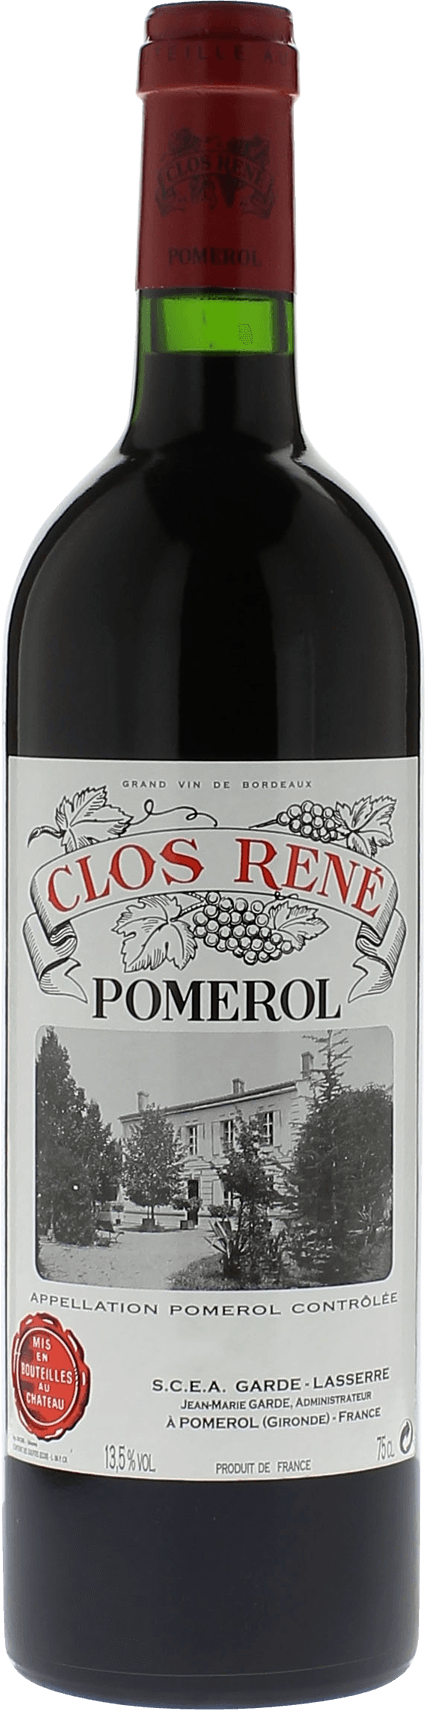 Clos rene 1986  Pomerol, Bordeaux rouge